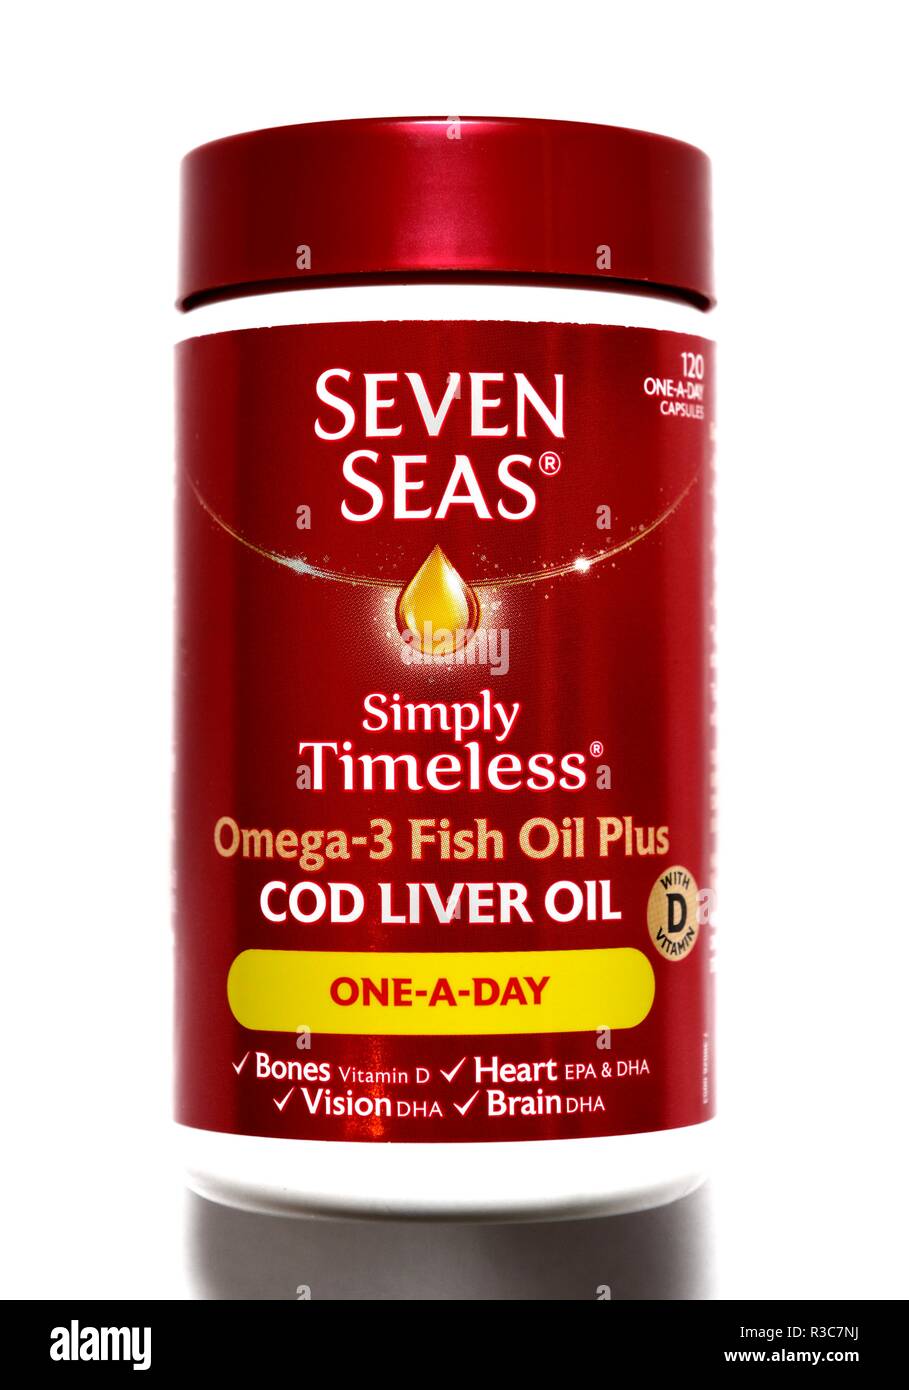 Seven seas cod liver oil immagini e fotografie stock ad alta risoluzione -  Alamy